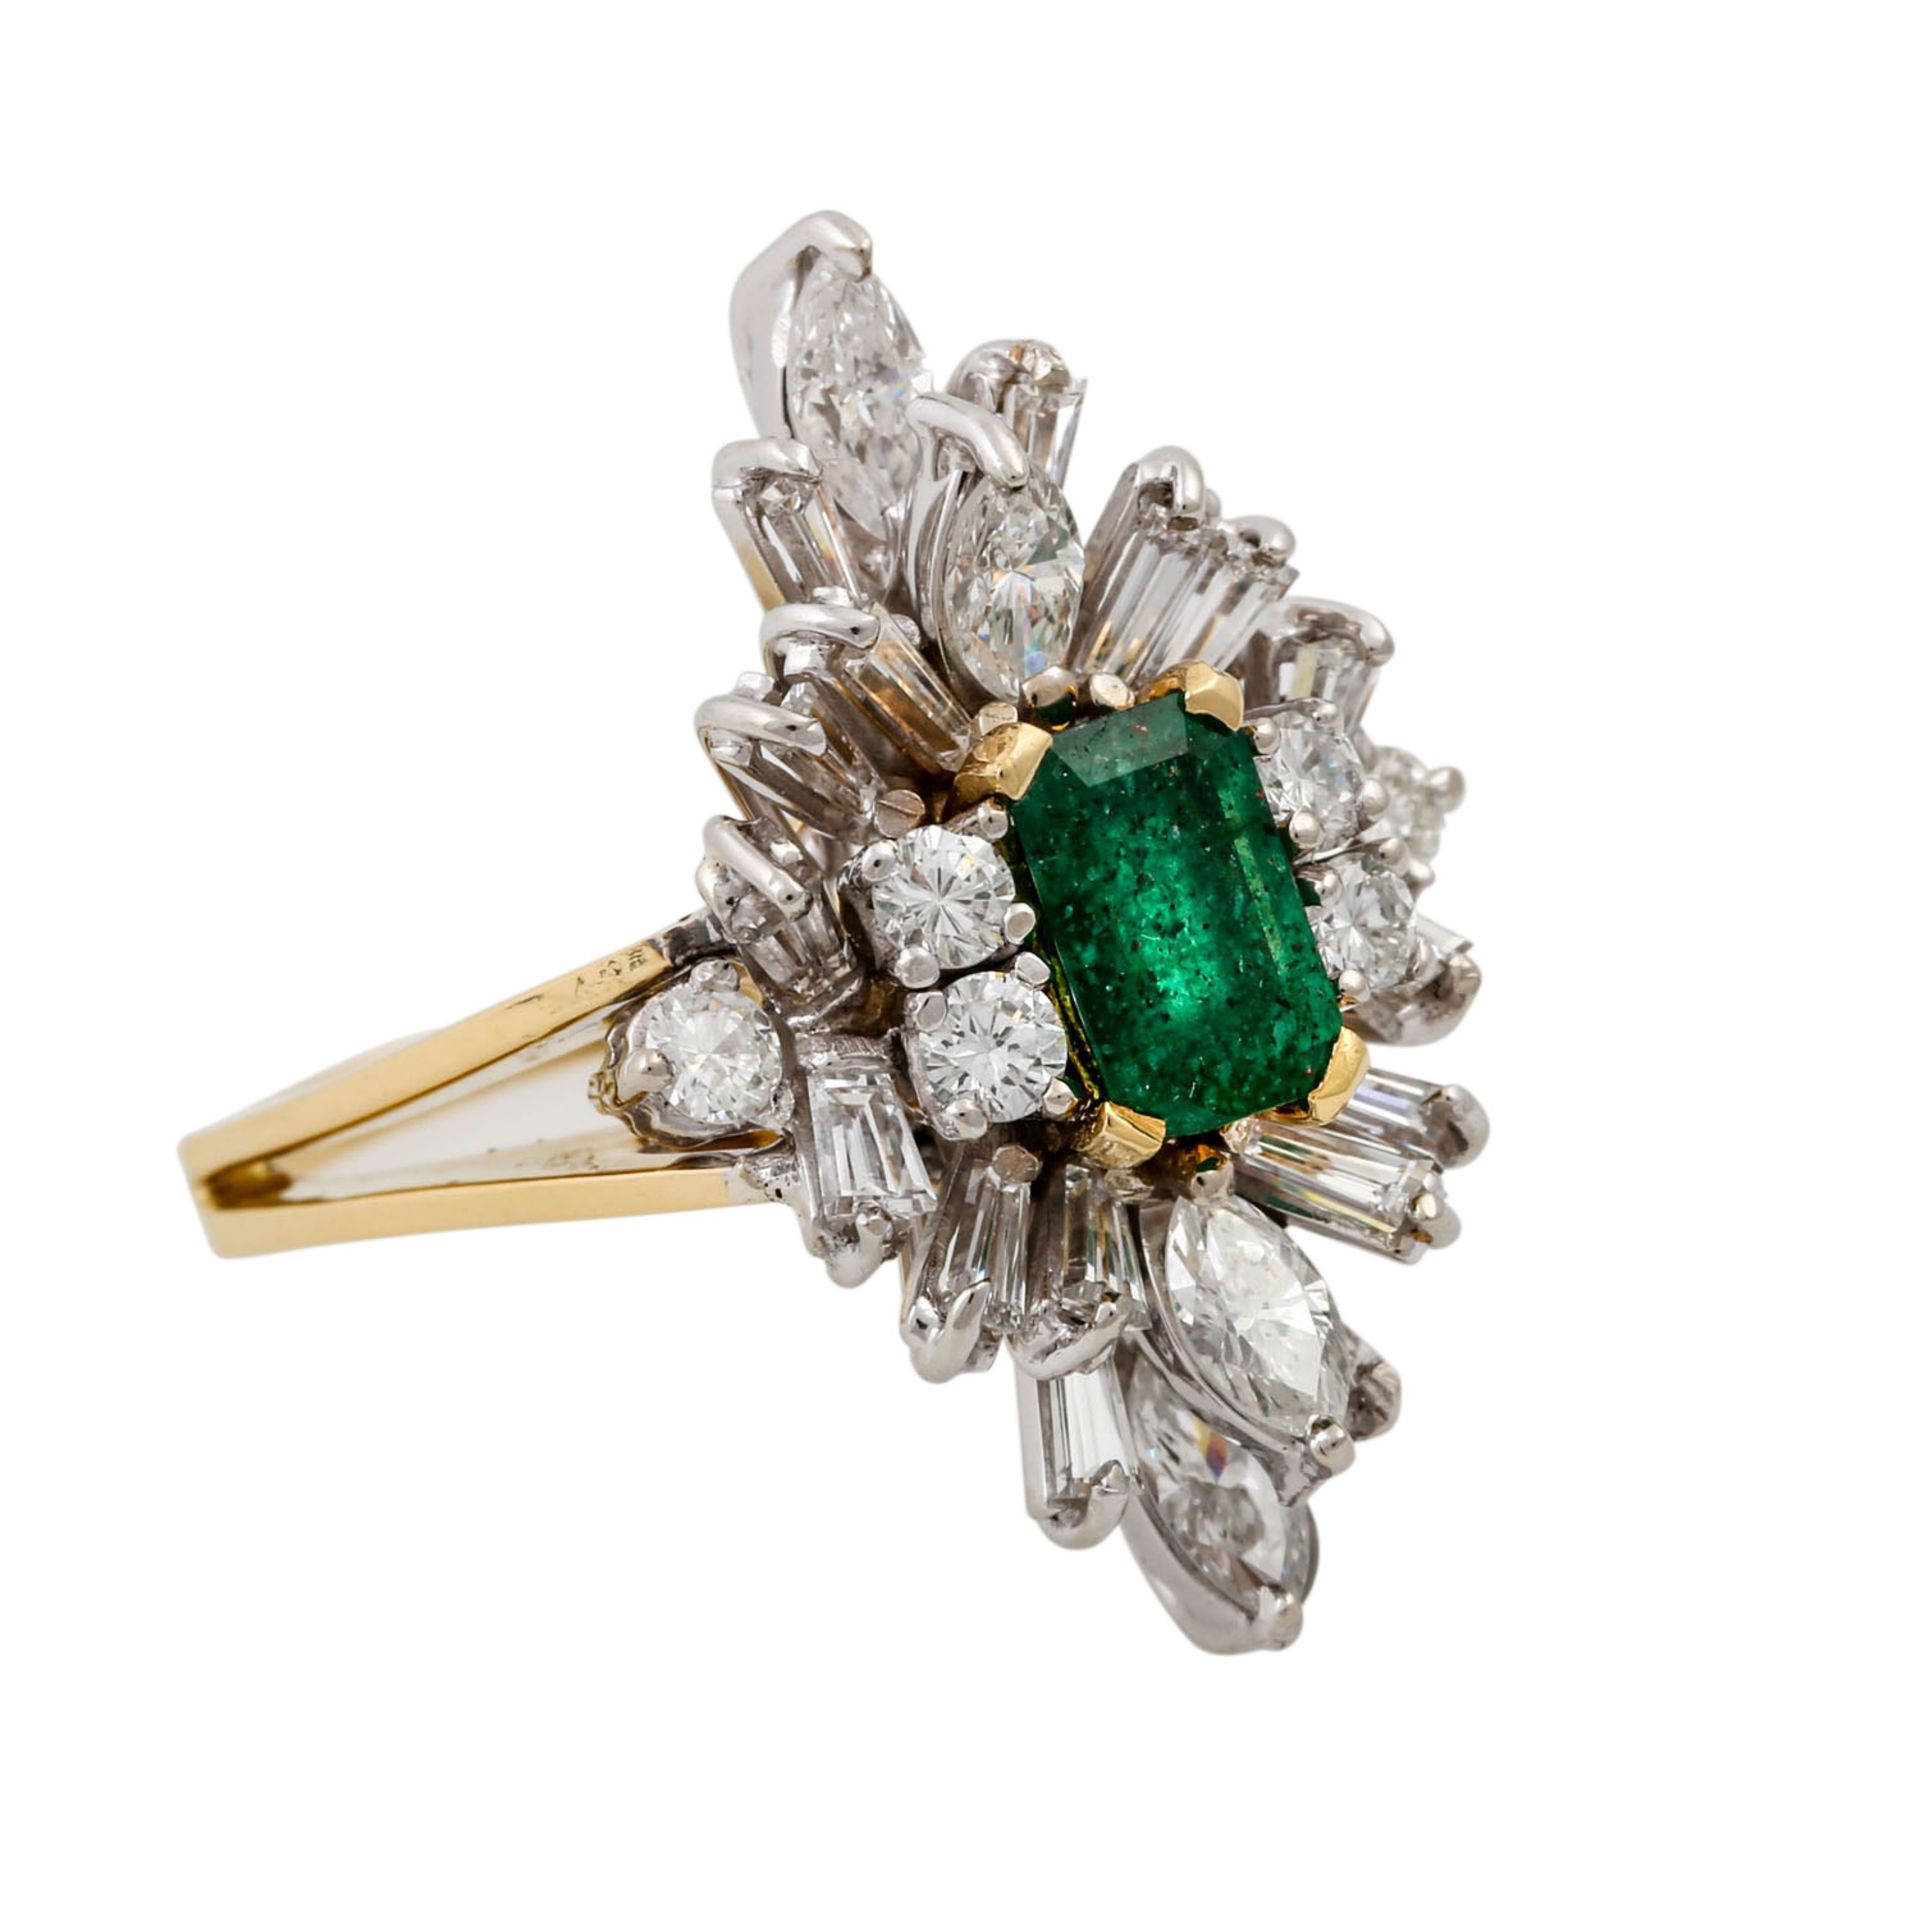 Ring mit Smaragd und Diamanten zus. ca. 1 ct,gute Farbe u. Reinheit, GG/WG 18K, 7,4 gr